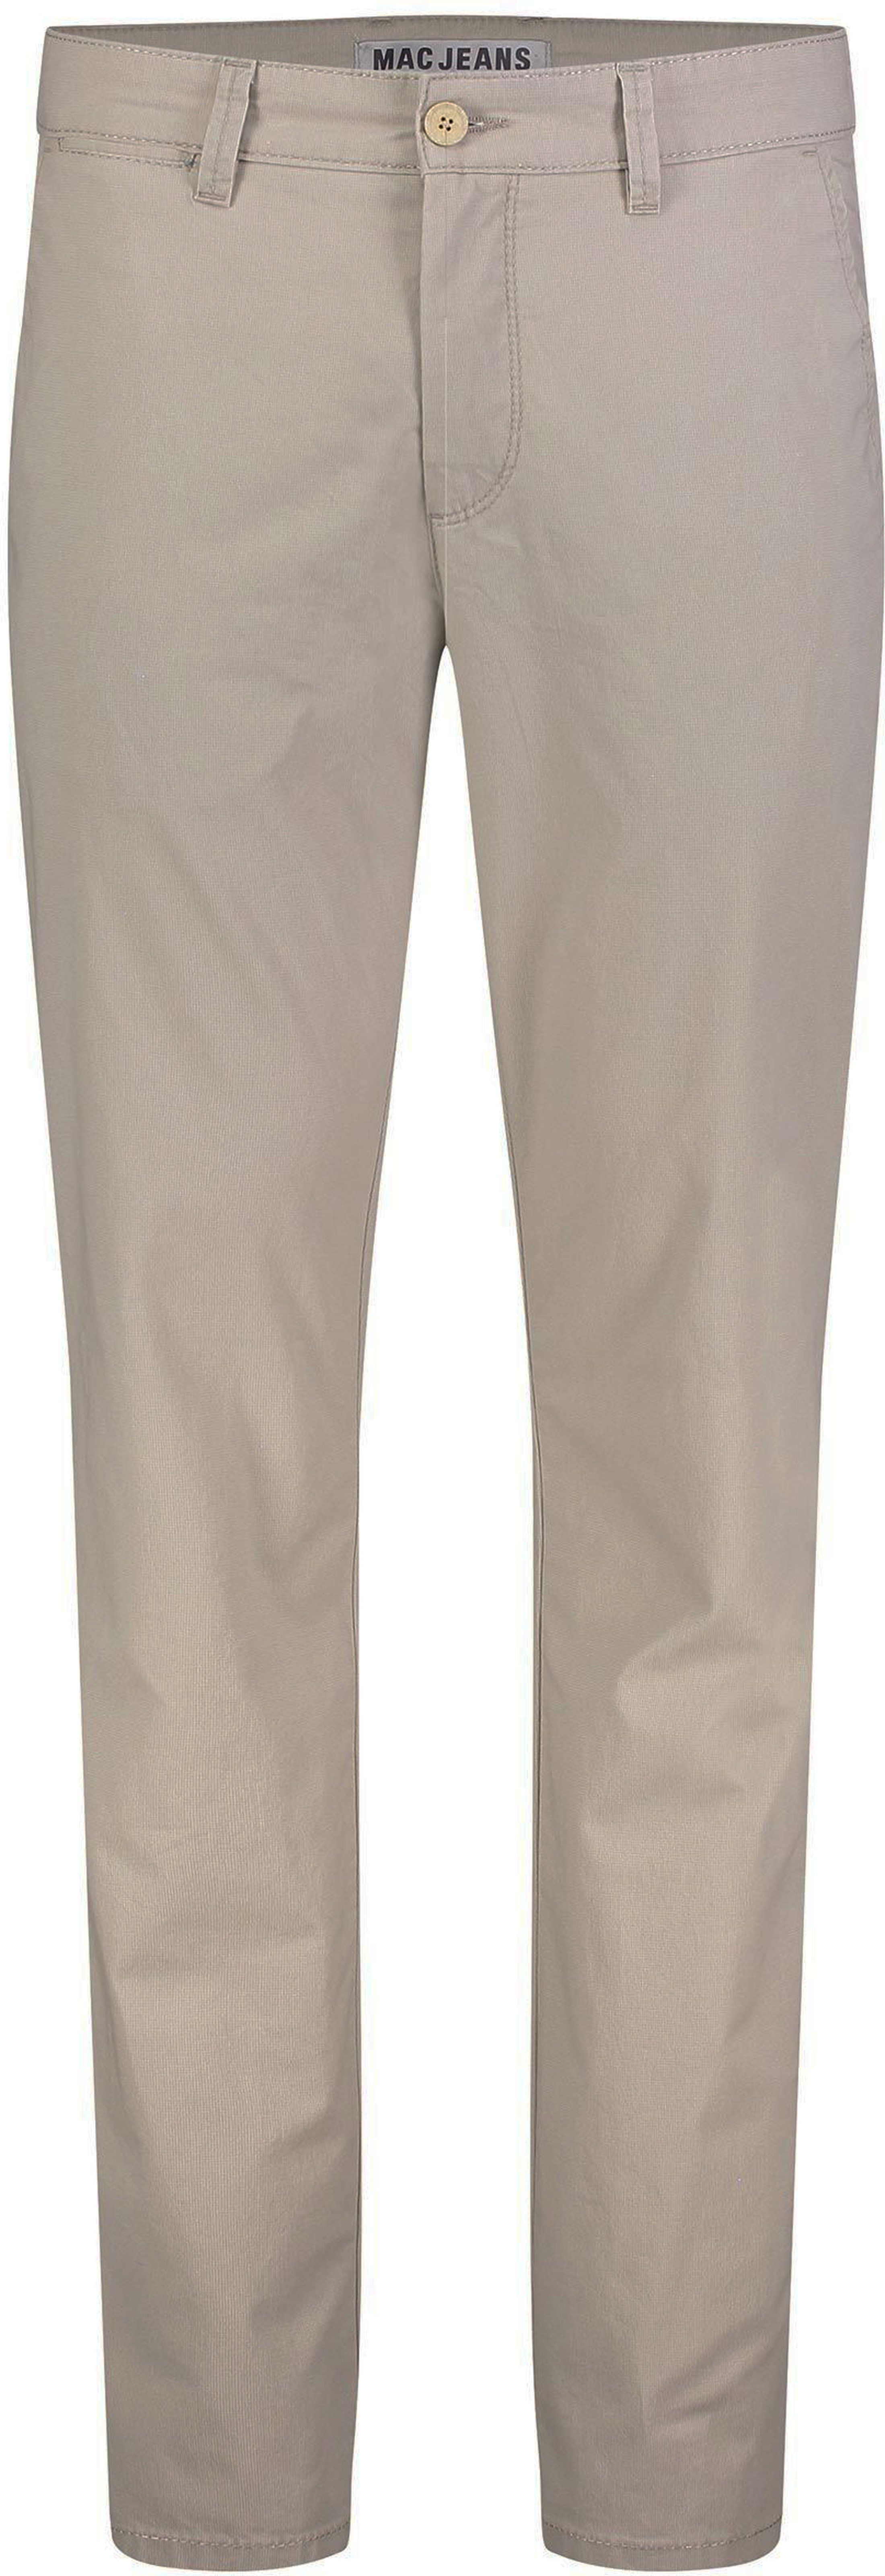 MAC Pantalon Lennox Imprimé Beige taille W 31